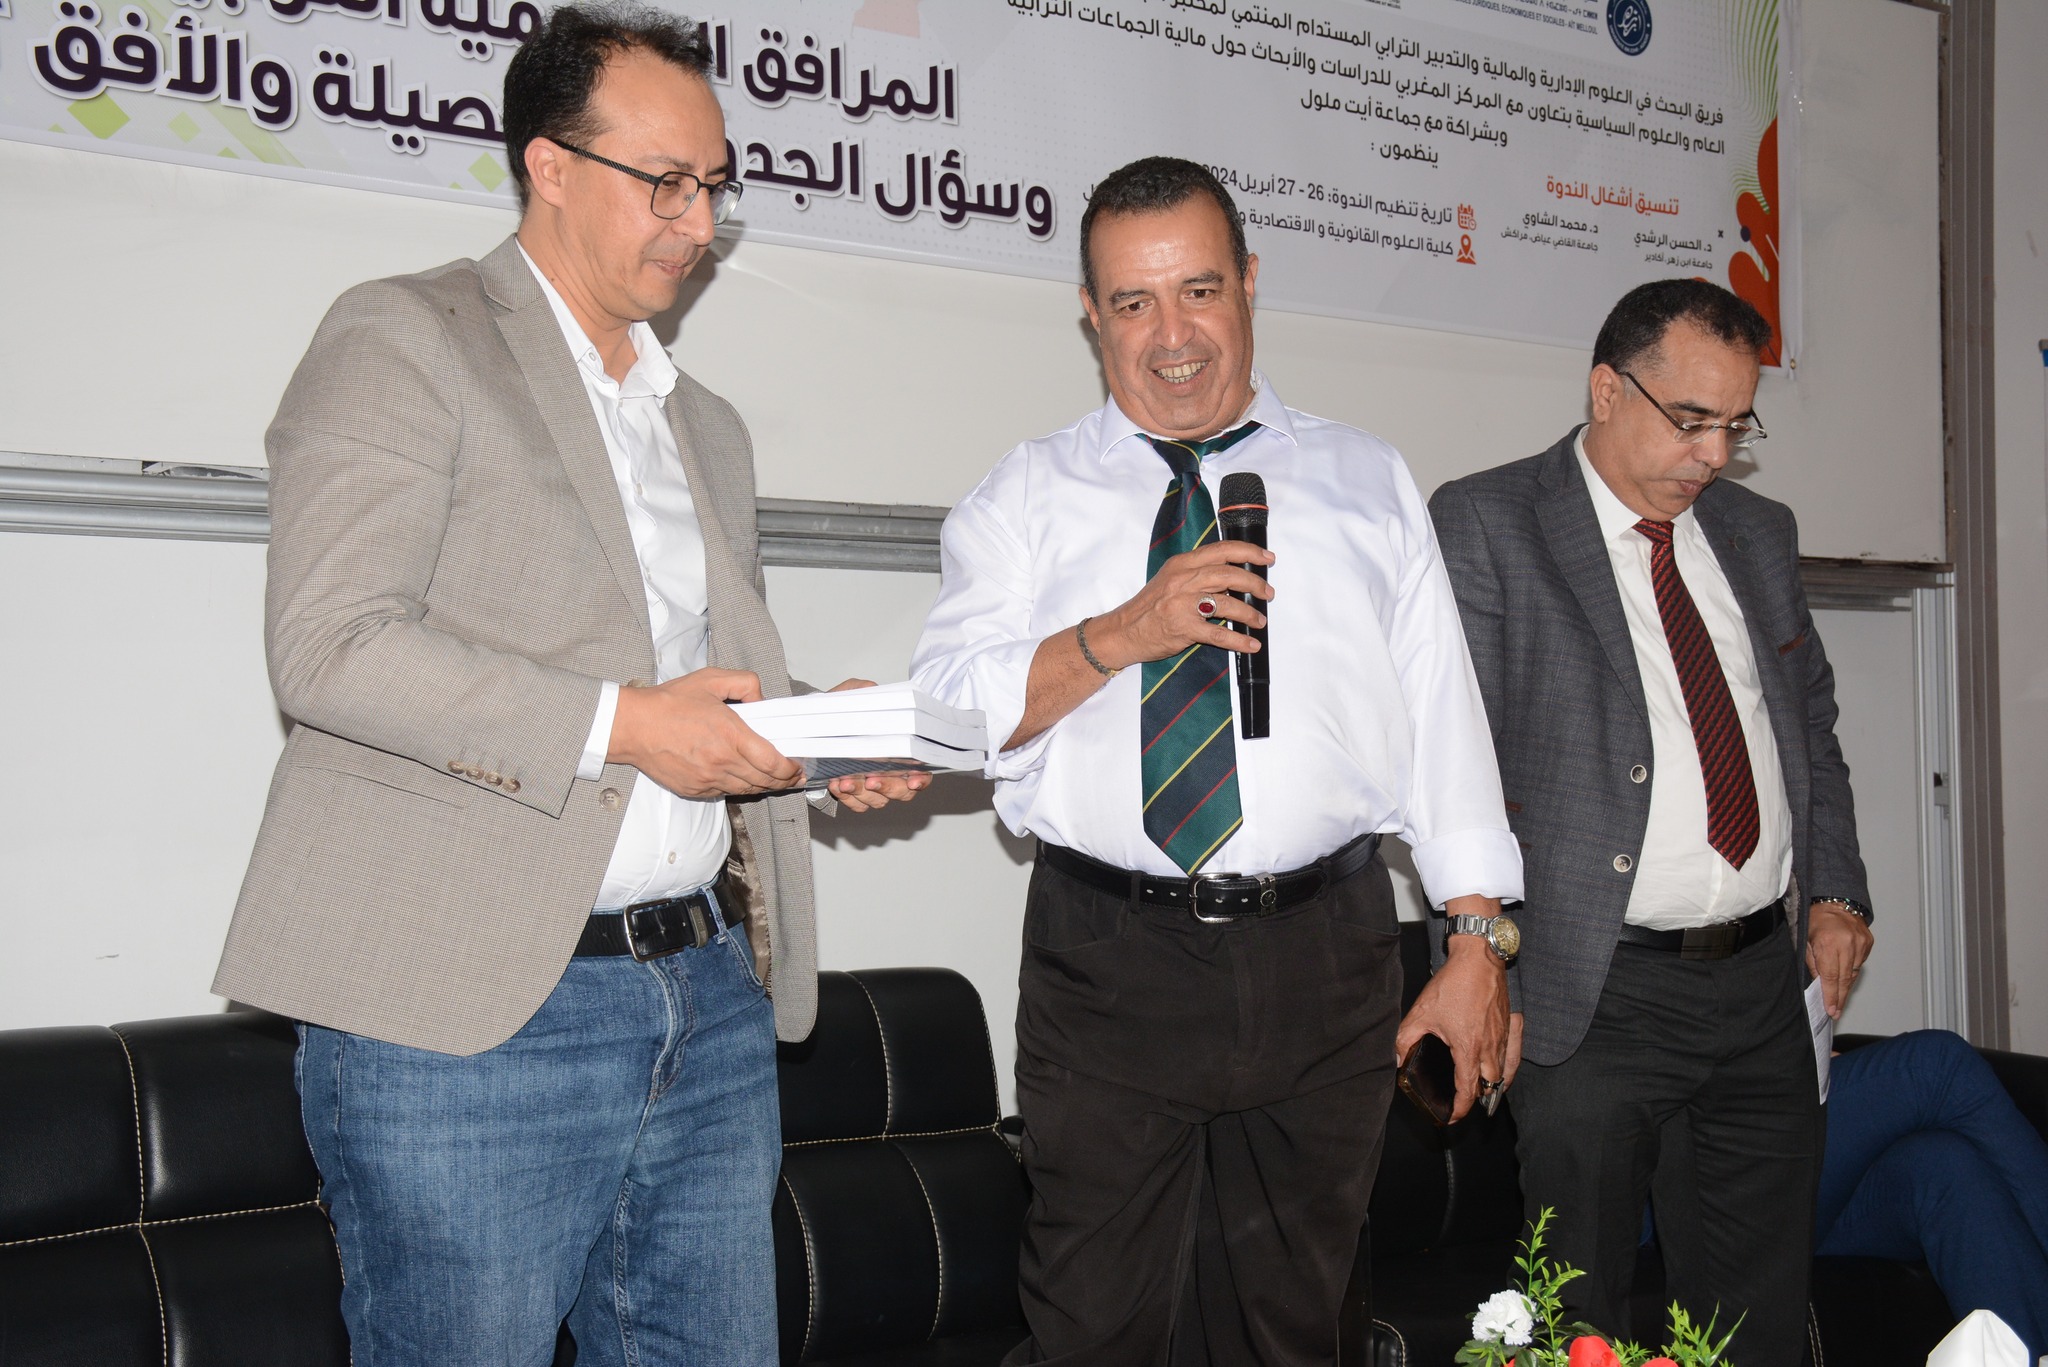 التوقيع على اتفاقية إطار للتعاون والشراكة بين جماعة أيت ملول والمركز المغربي للدراسات والأبحاث حول مالية الجماعات الترابية